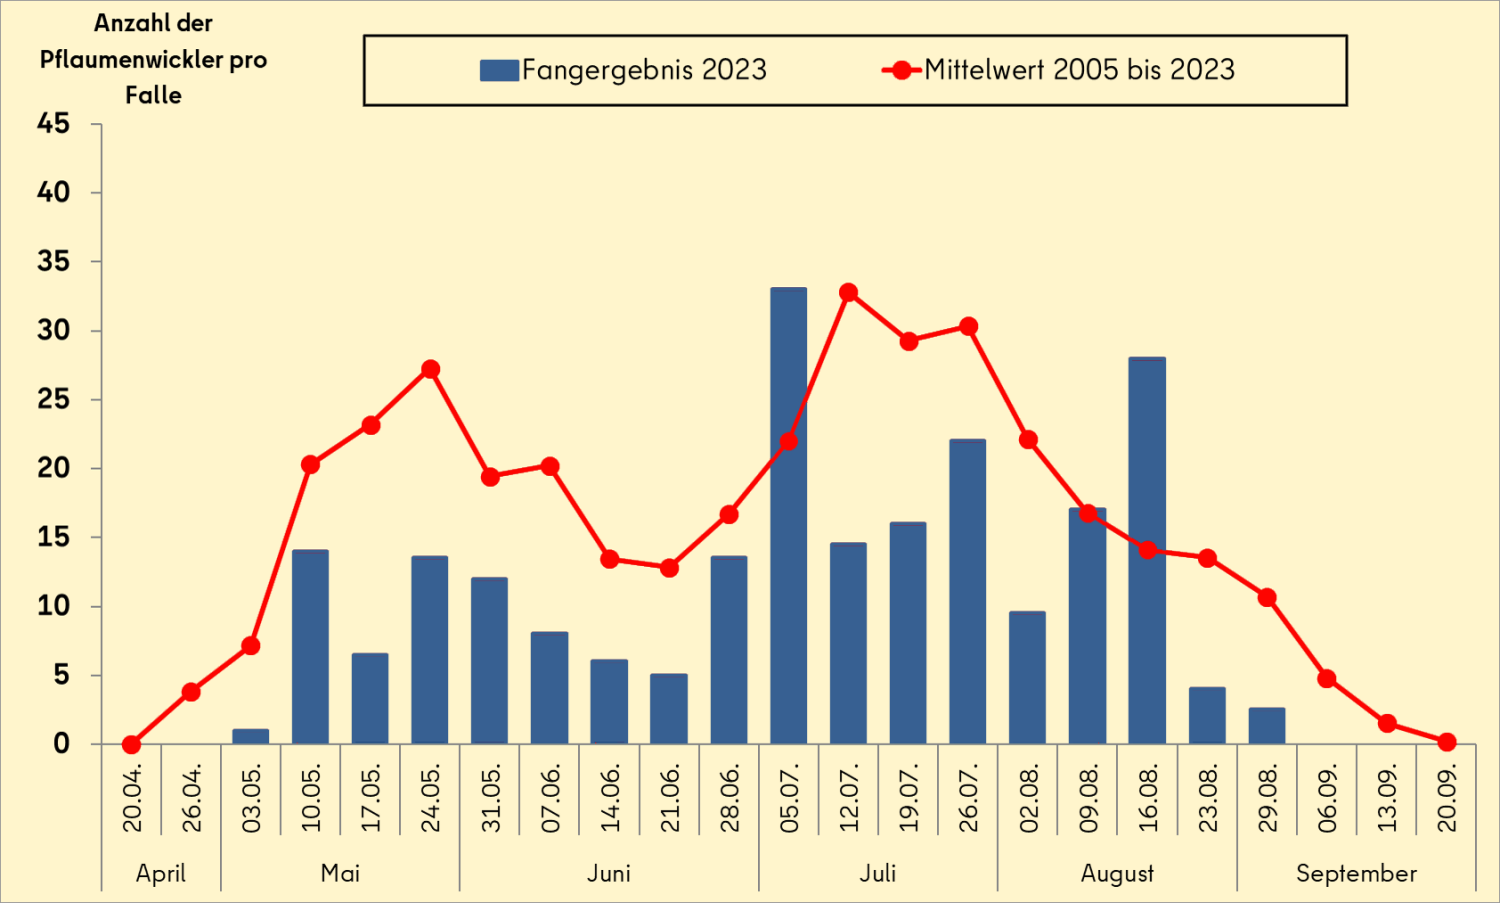 Jahreszyklus des Pflaumenwicklers 2023 im Vergleich mit dem Mittelwert